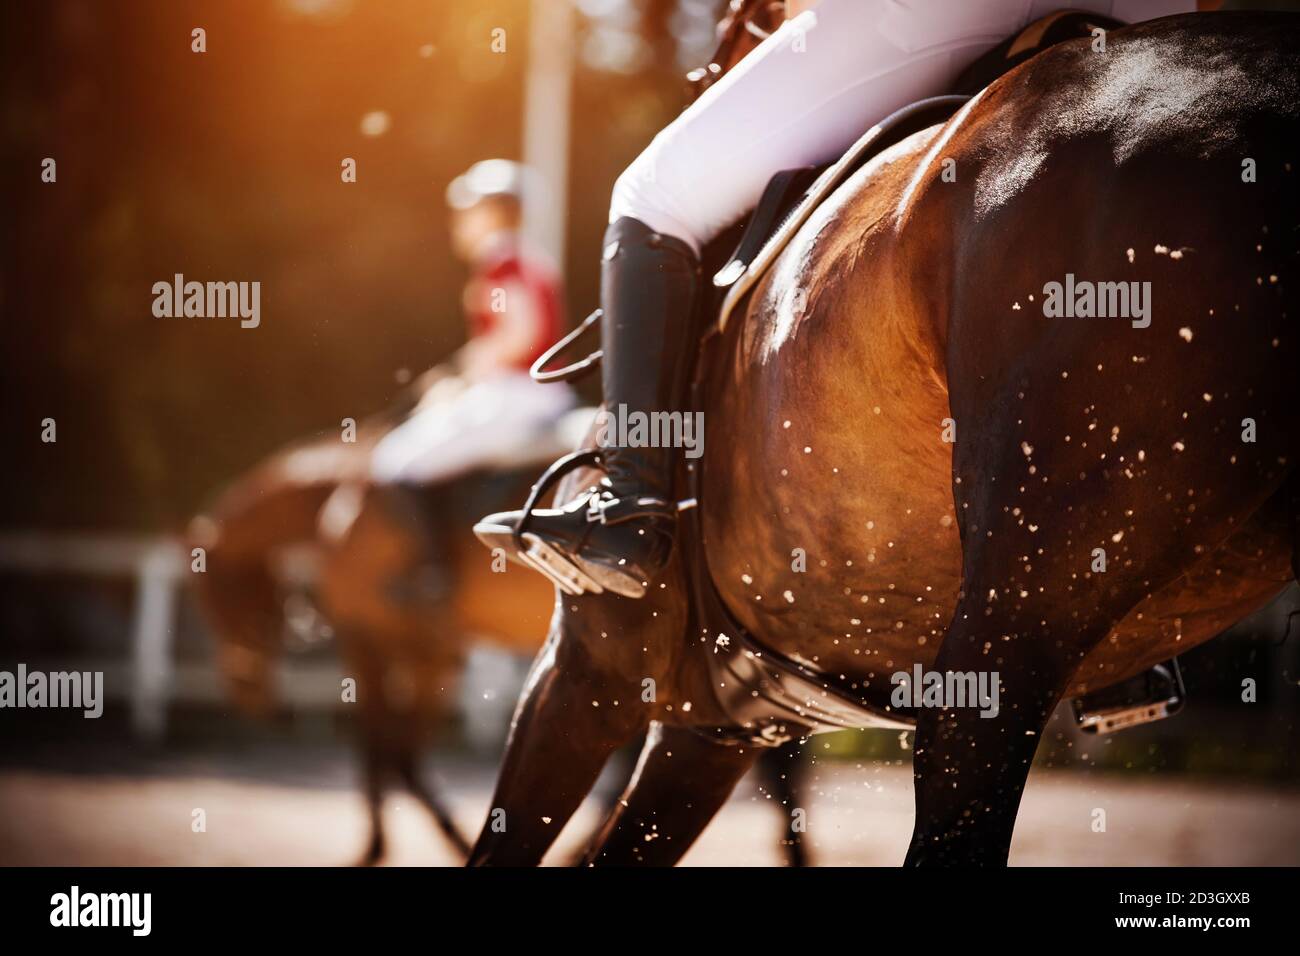 Un cavallo della baia con un cavaliere in sella galoppe rapidamente, sollevando la polvere nell'aria, che è illuminata dalla luce solare brillante. Equitazione. Selettivo Foto Stock